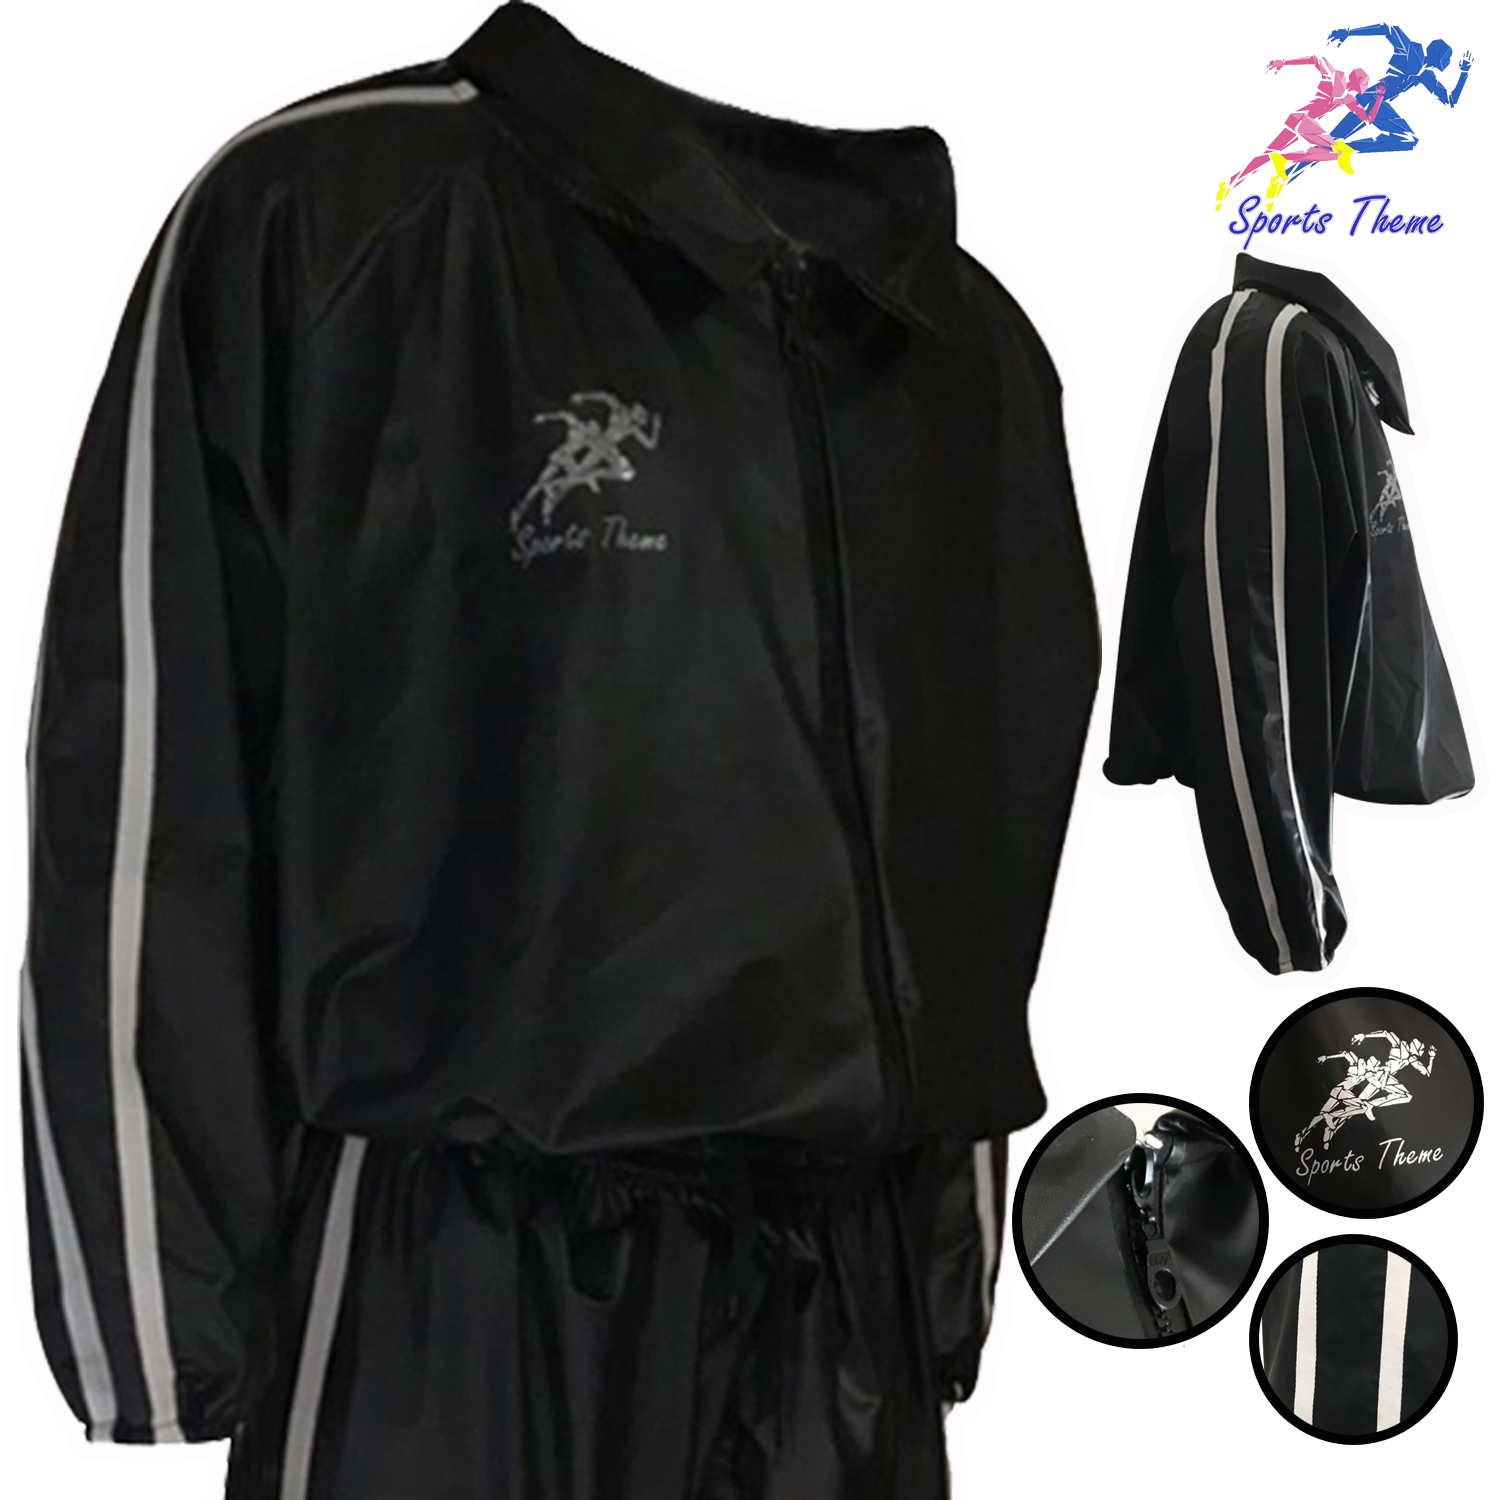 เสื้อซาวน่า รุ่นใหม่ ล่าสุด เสื้อกีฬาแฟชั่น สีดำ แถบข้าง สีขาว Sauna Suit รีดเหงื่อ เพิ่มการเผาผลาญ ได้เป็นอย่างดี การออกกำลังกาย ลดน้ำหนัก